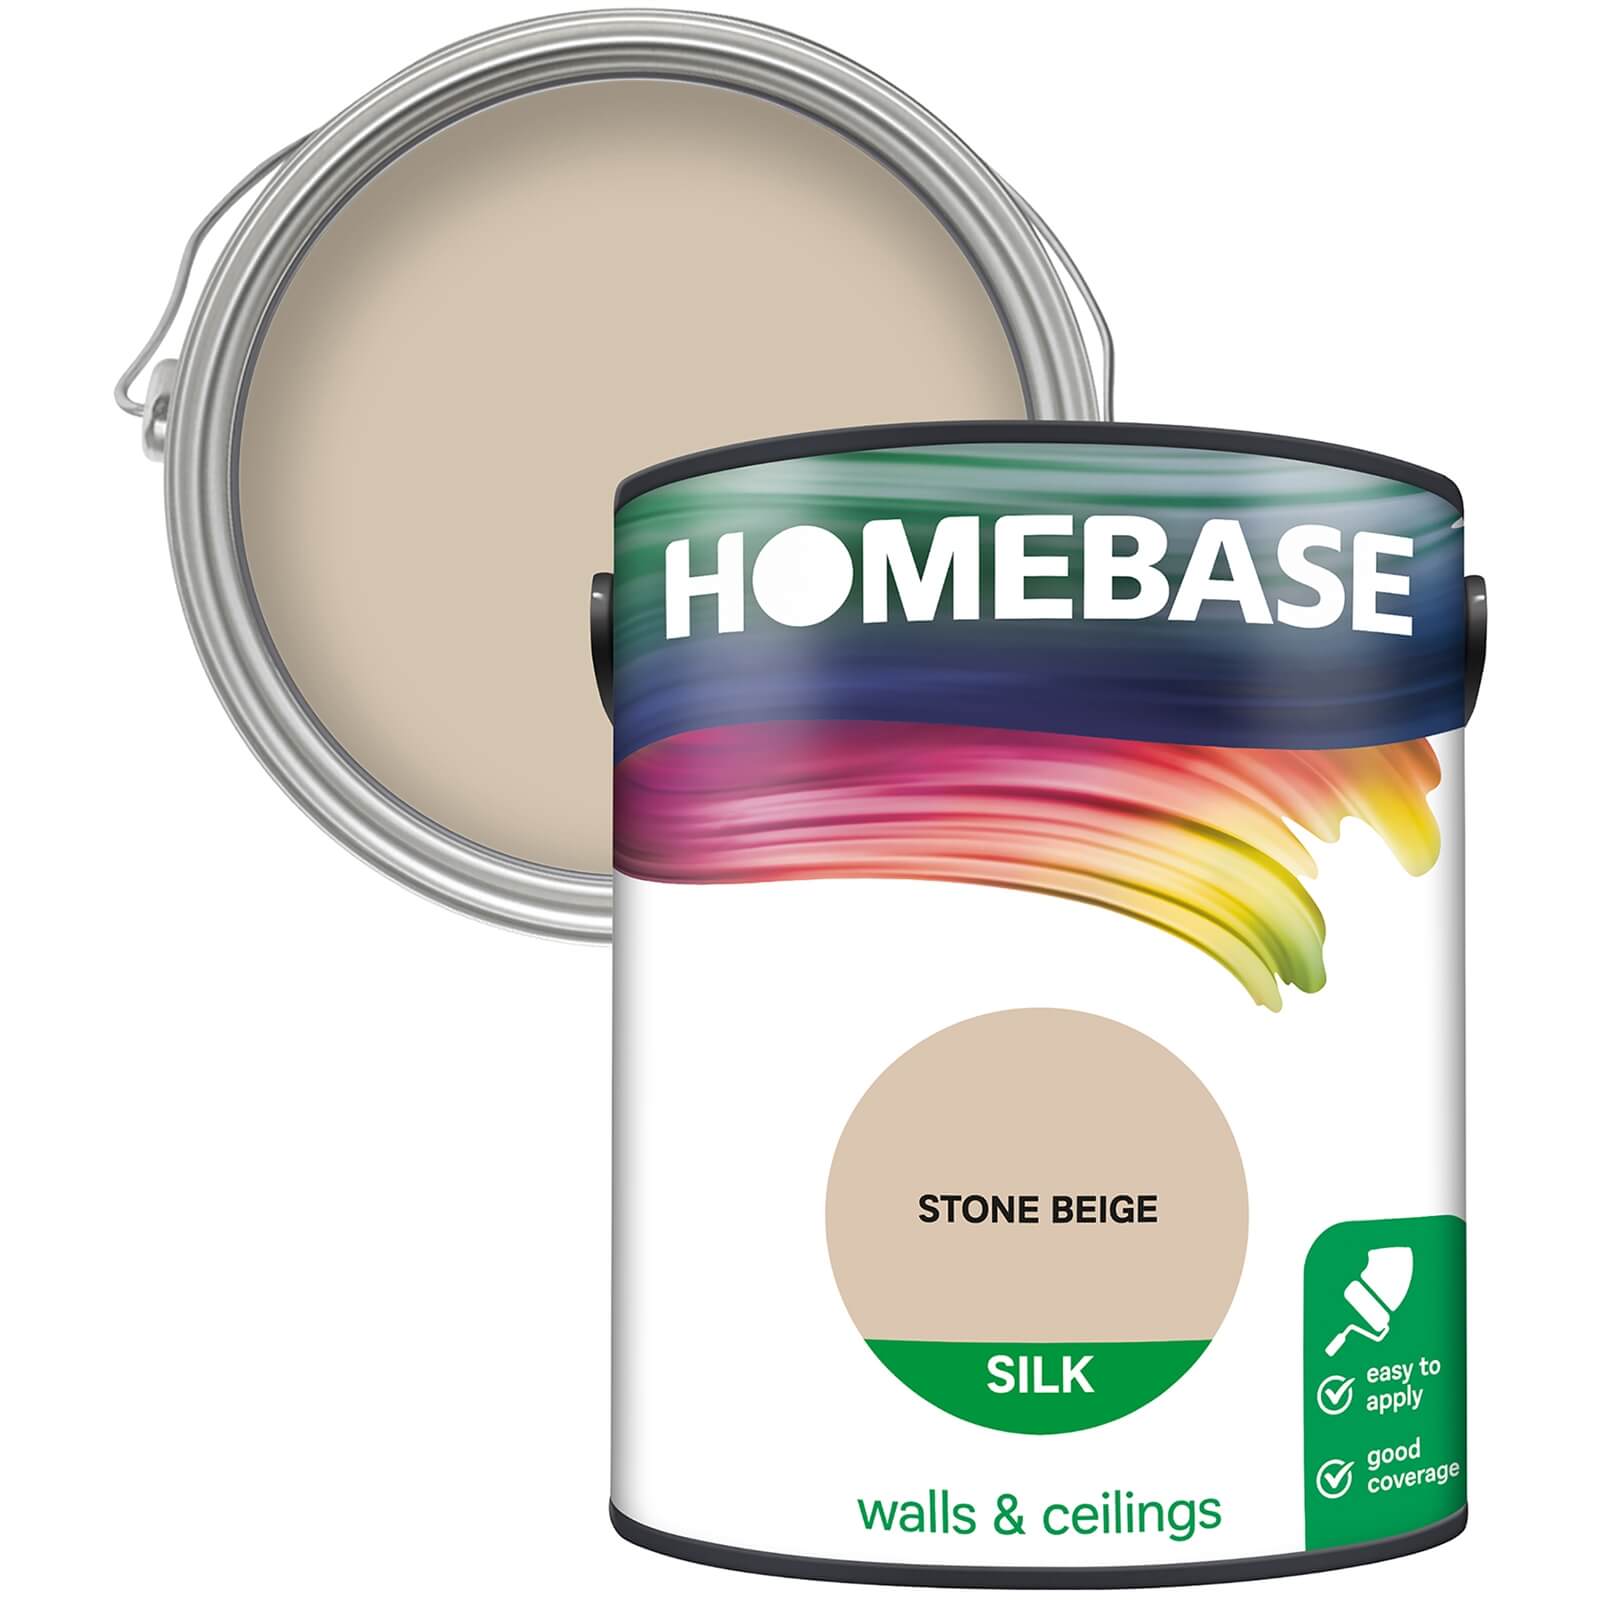 Homebase Silk Emulsion Paint Stone Beige - 5L